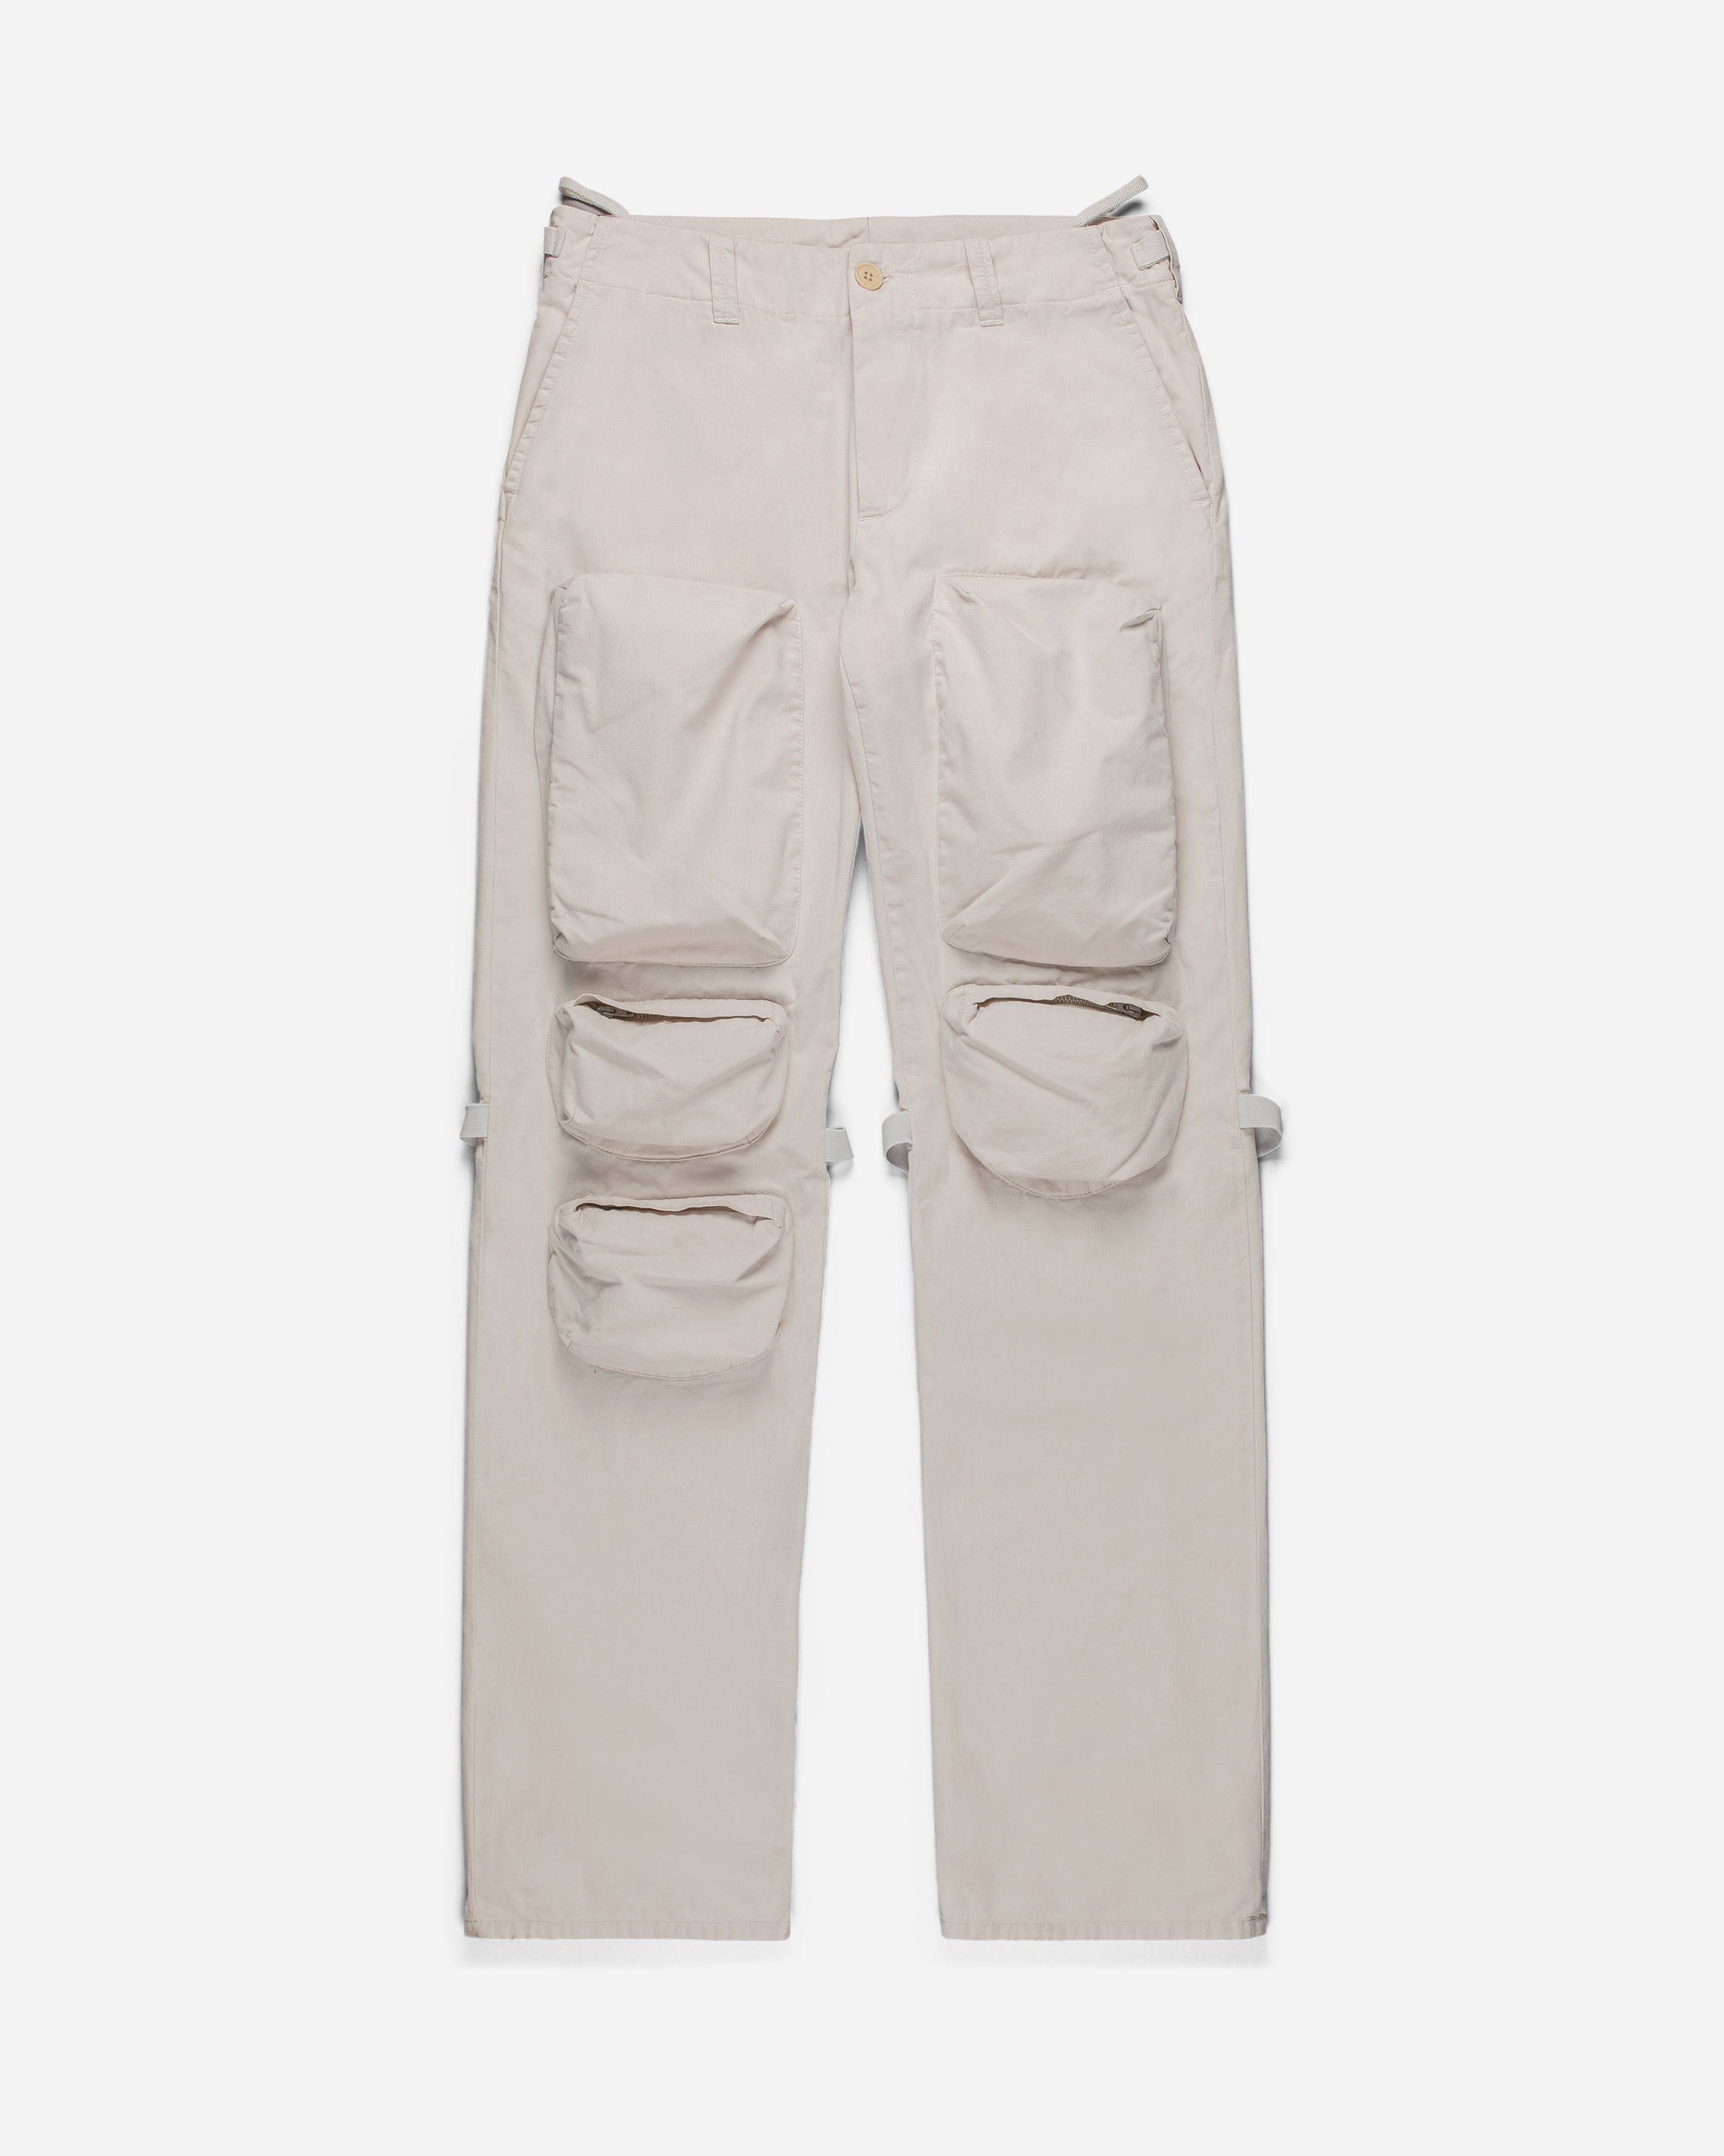 Helmut Lang Cotton Cargo Trousers - 2000s - SILVER LEAGUE